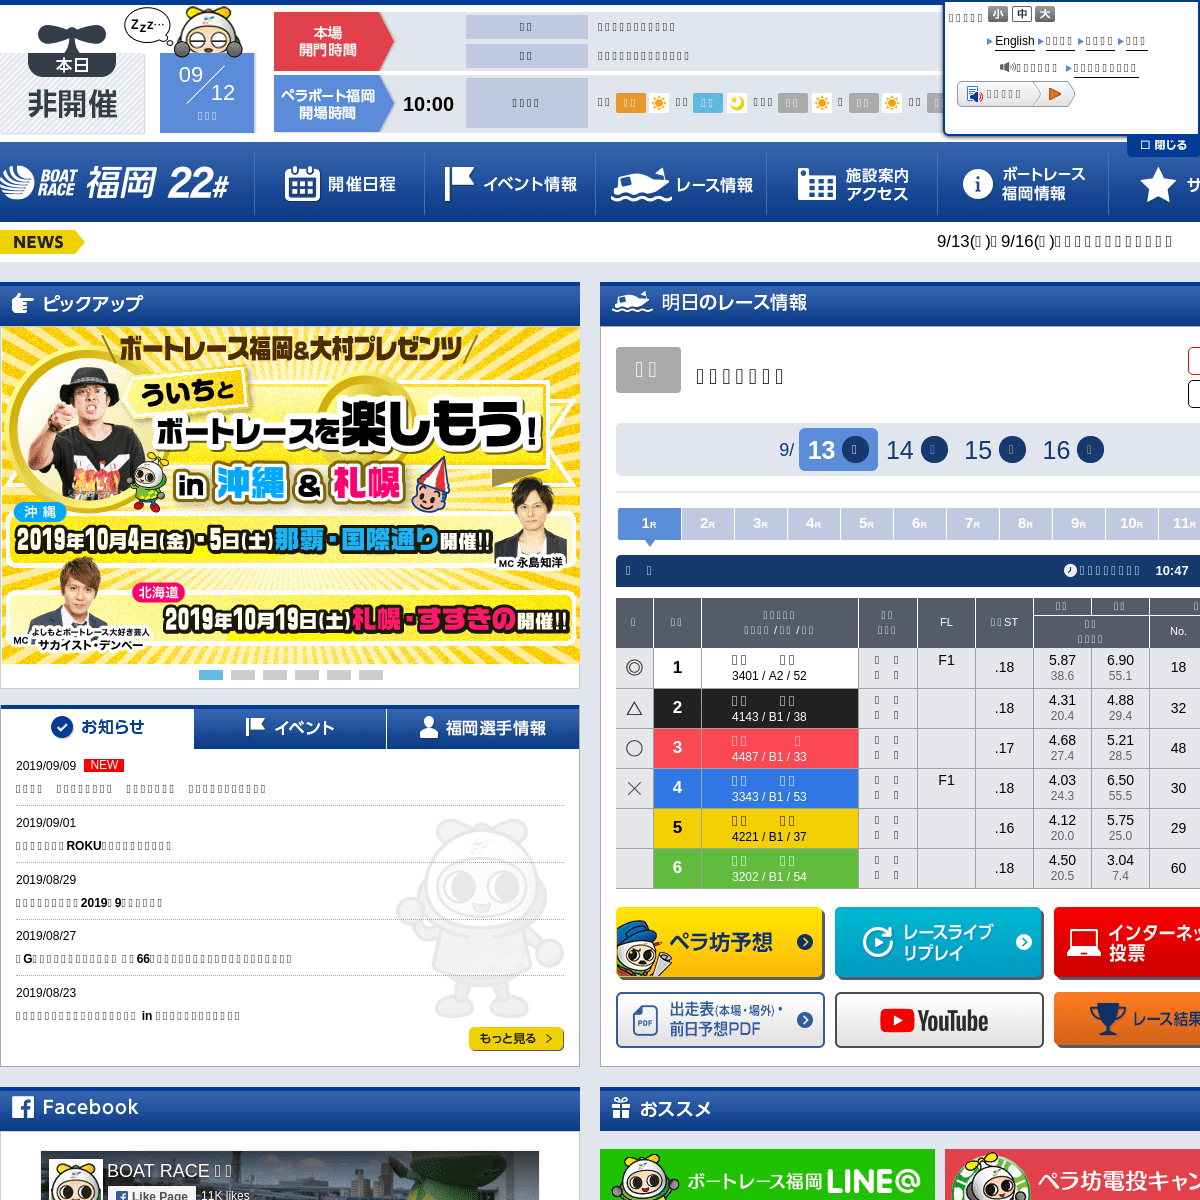 ボートレース福岡 Official Site